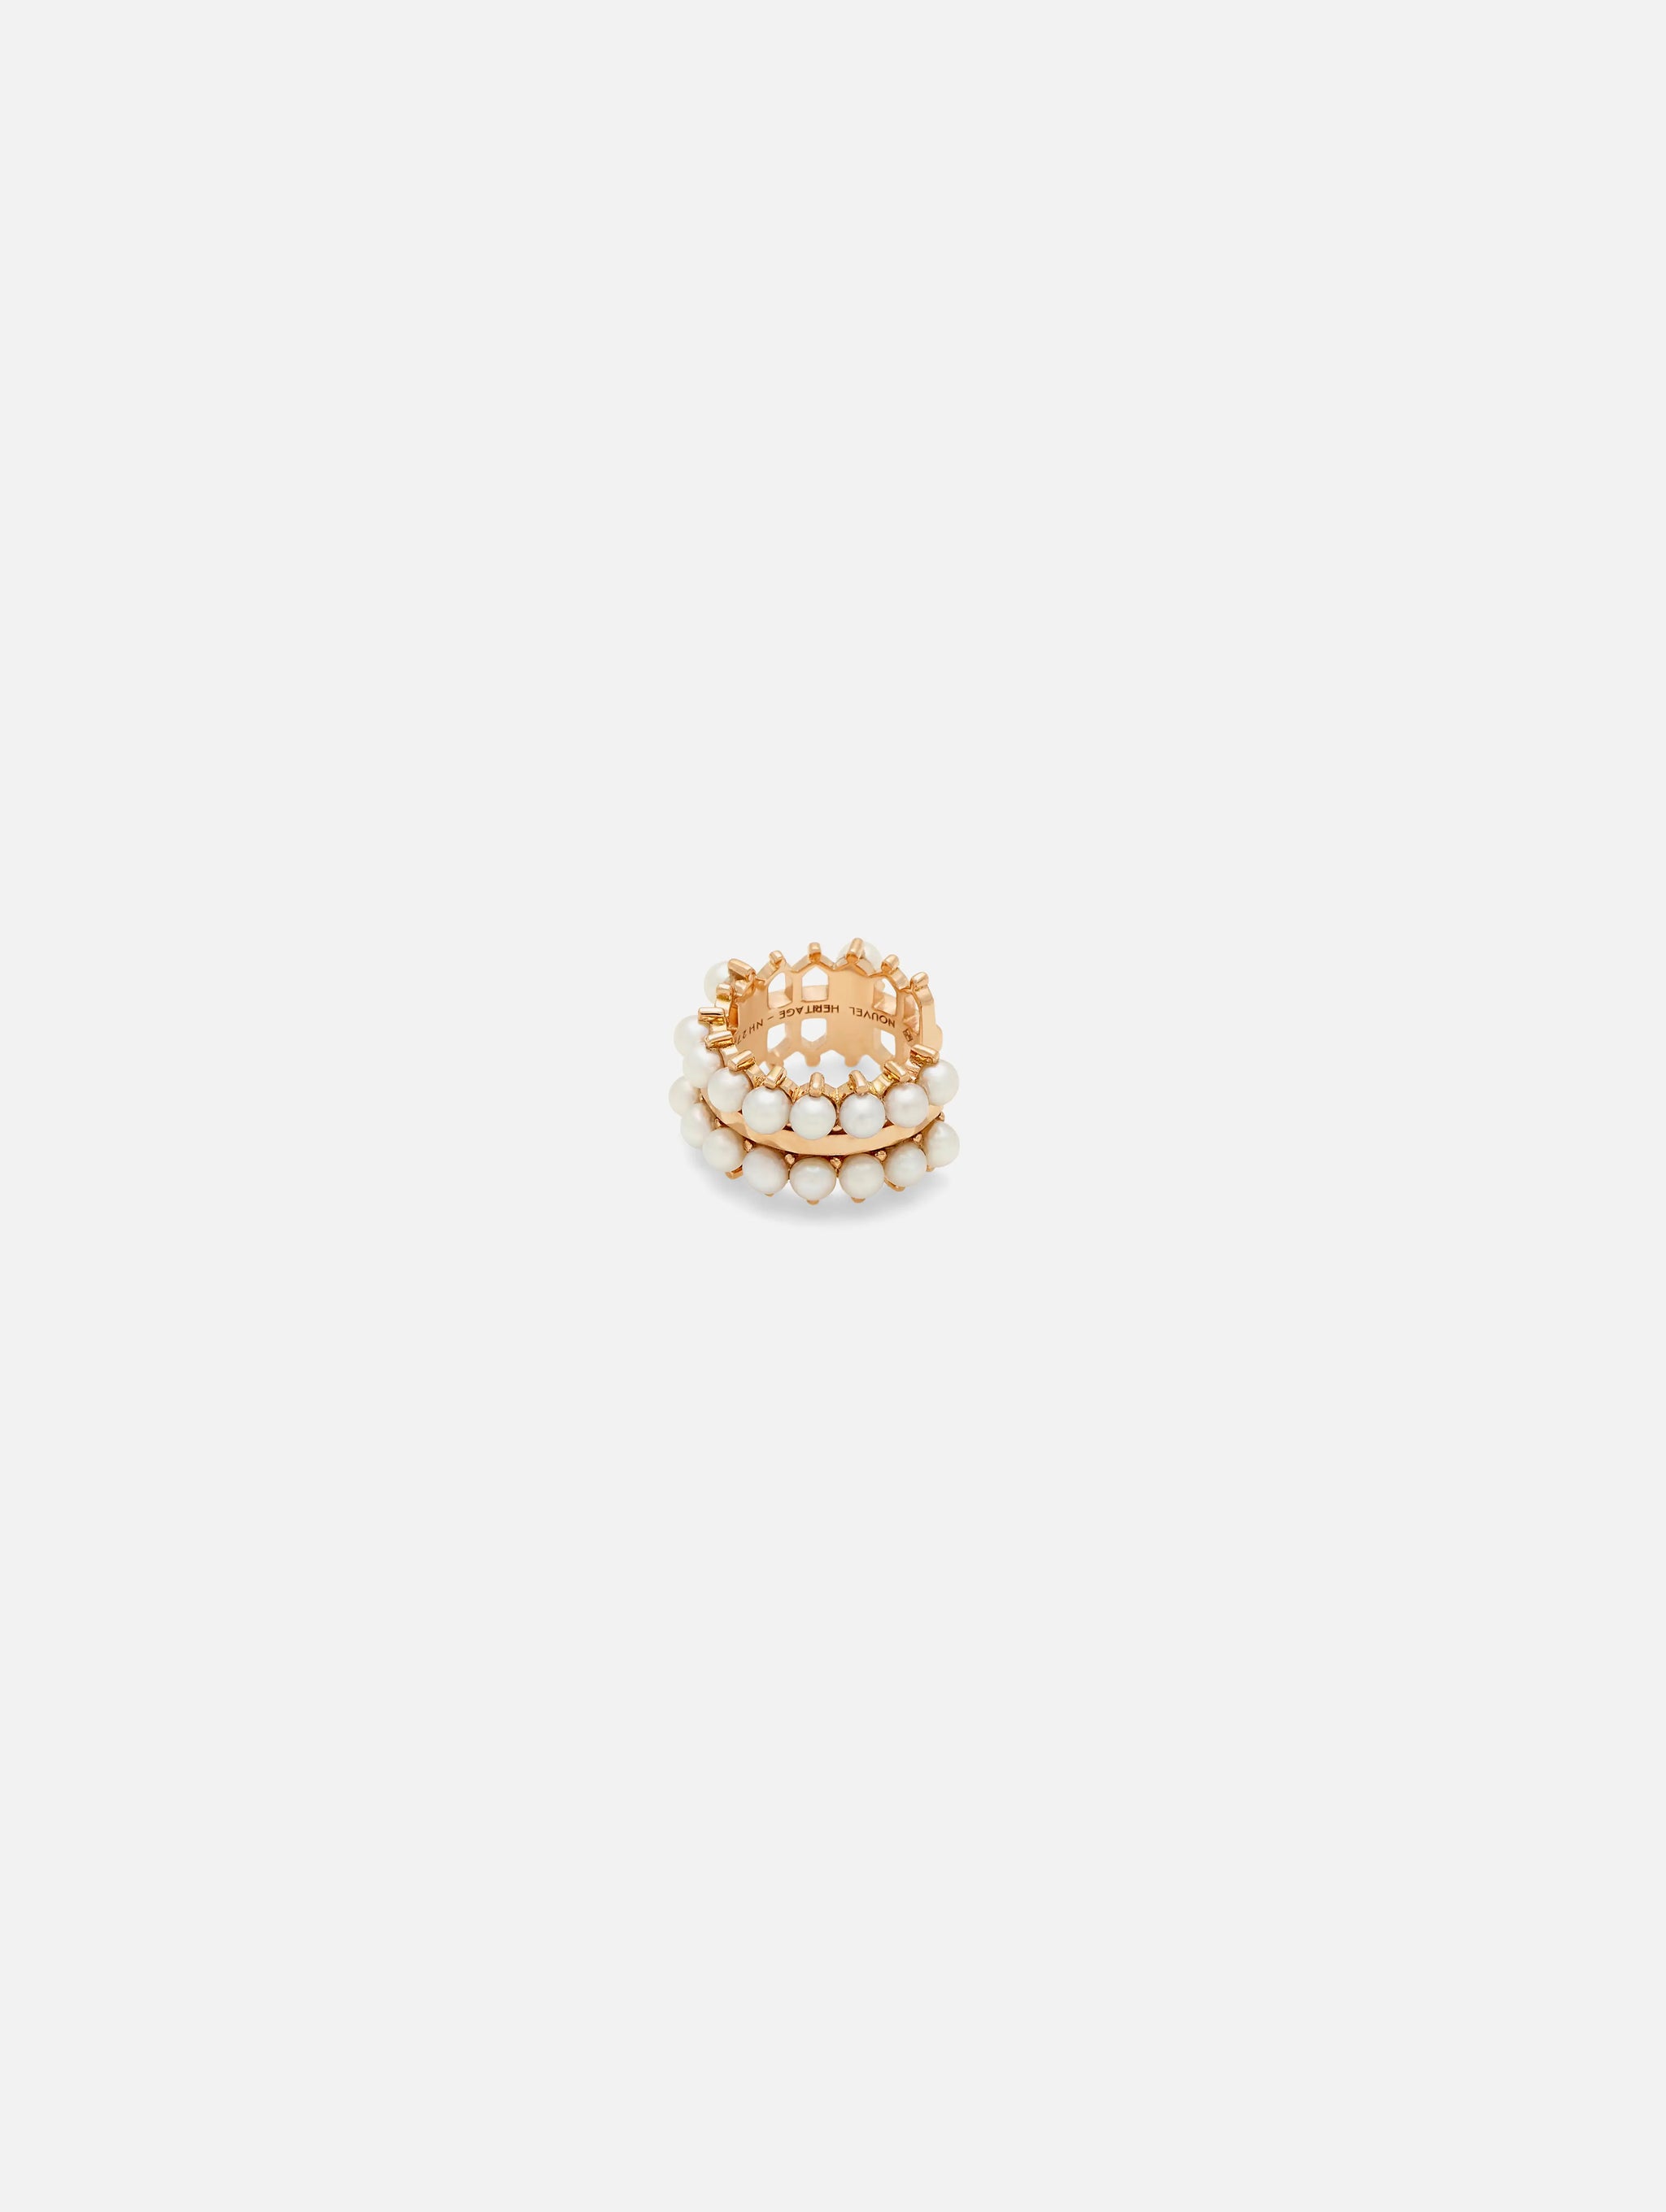 Bijou d'oreille Vendôme Double Perle en Or Rose - 1 - Nouvel Heritage